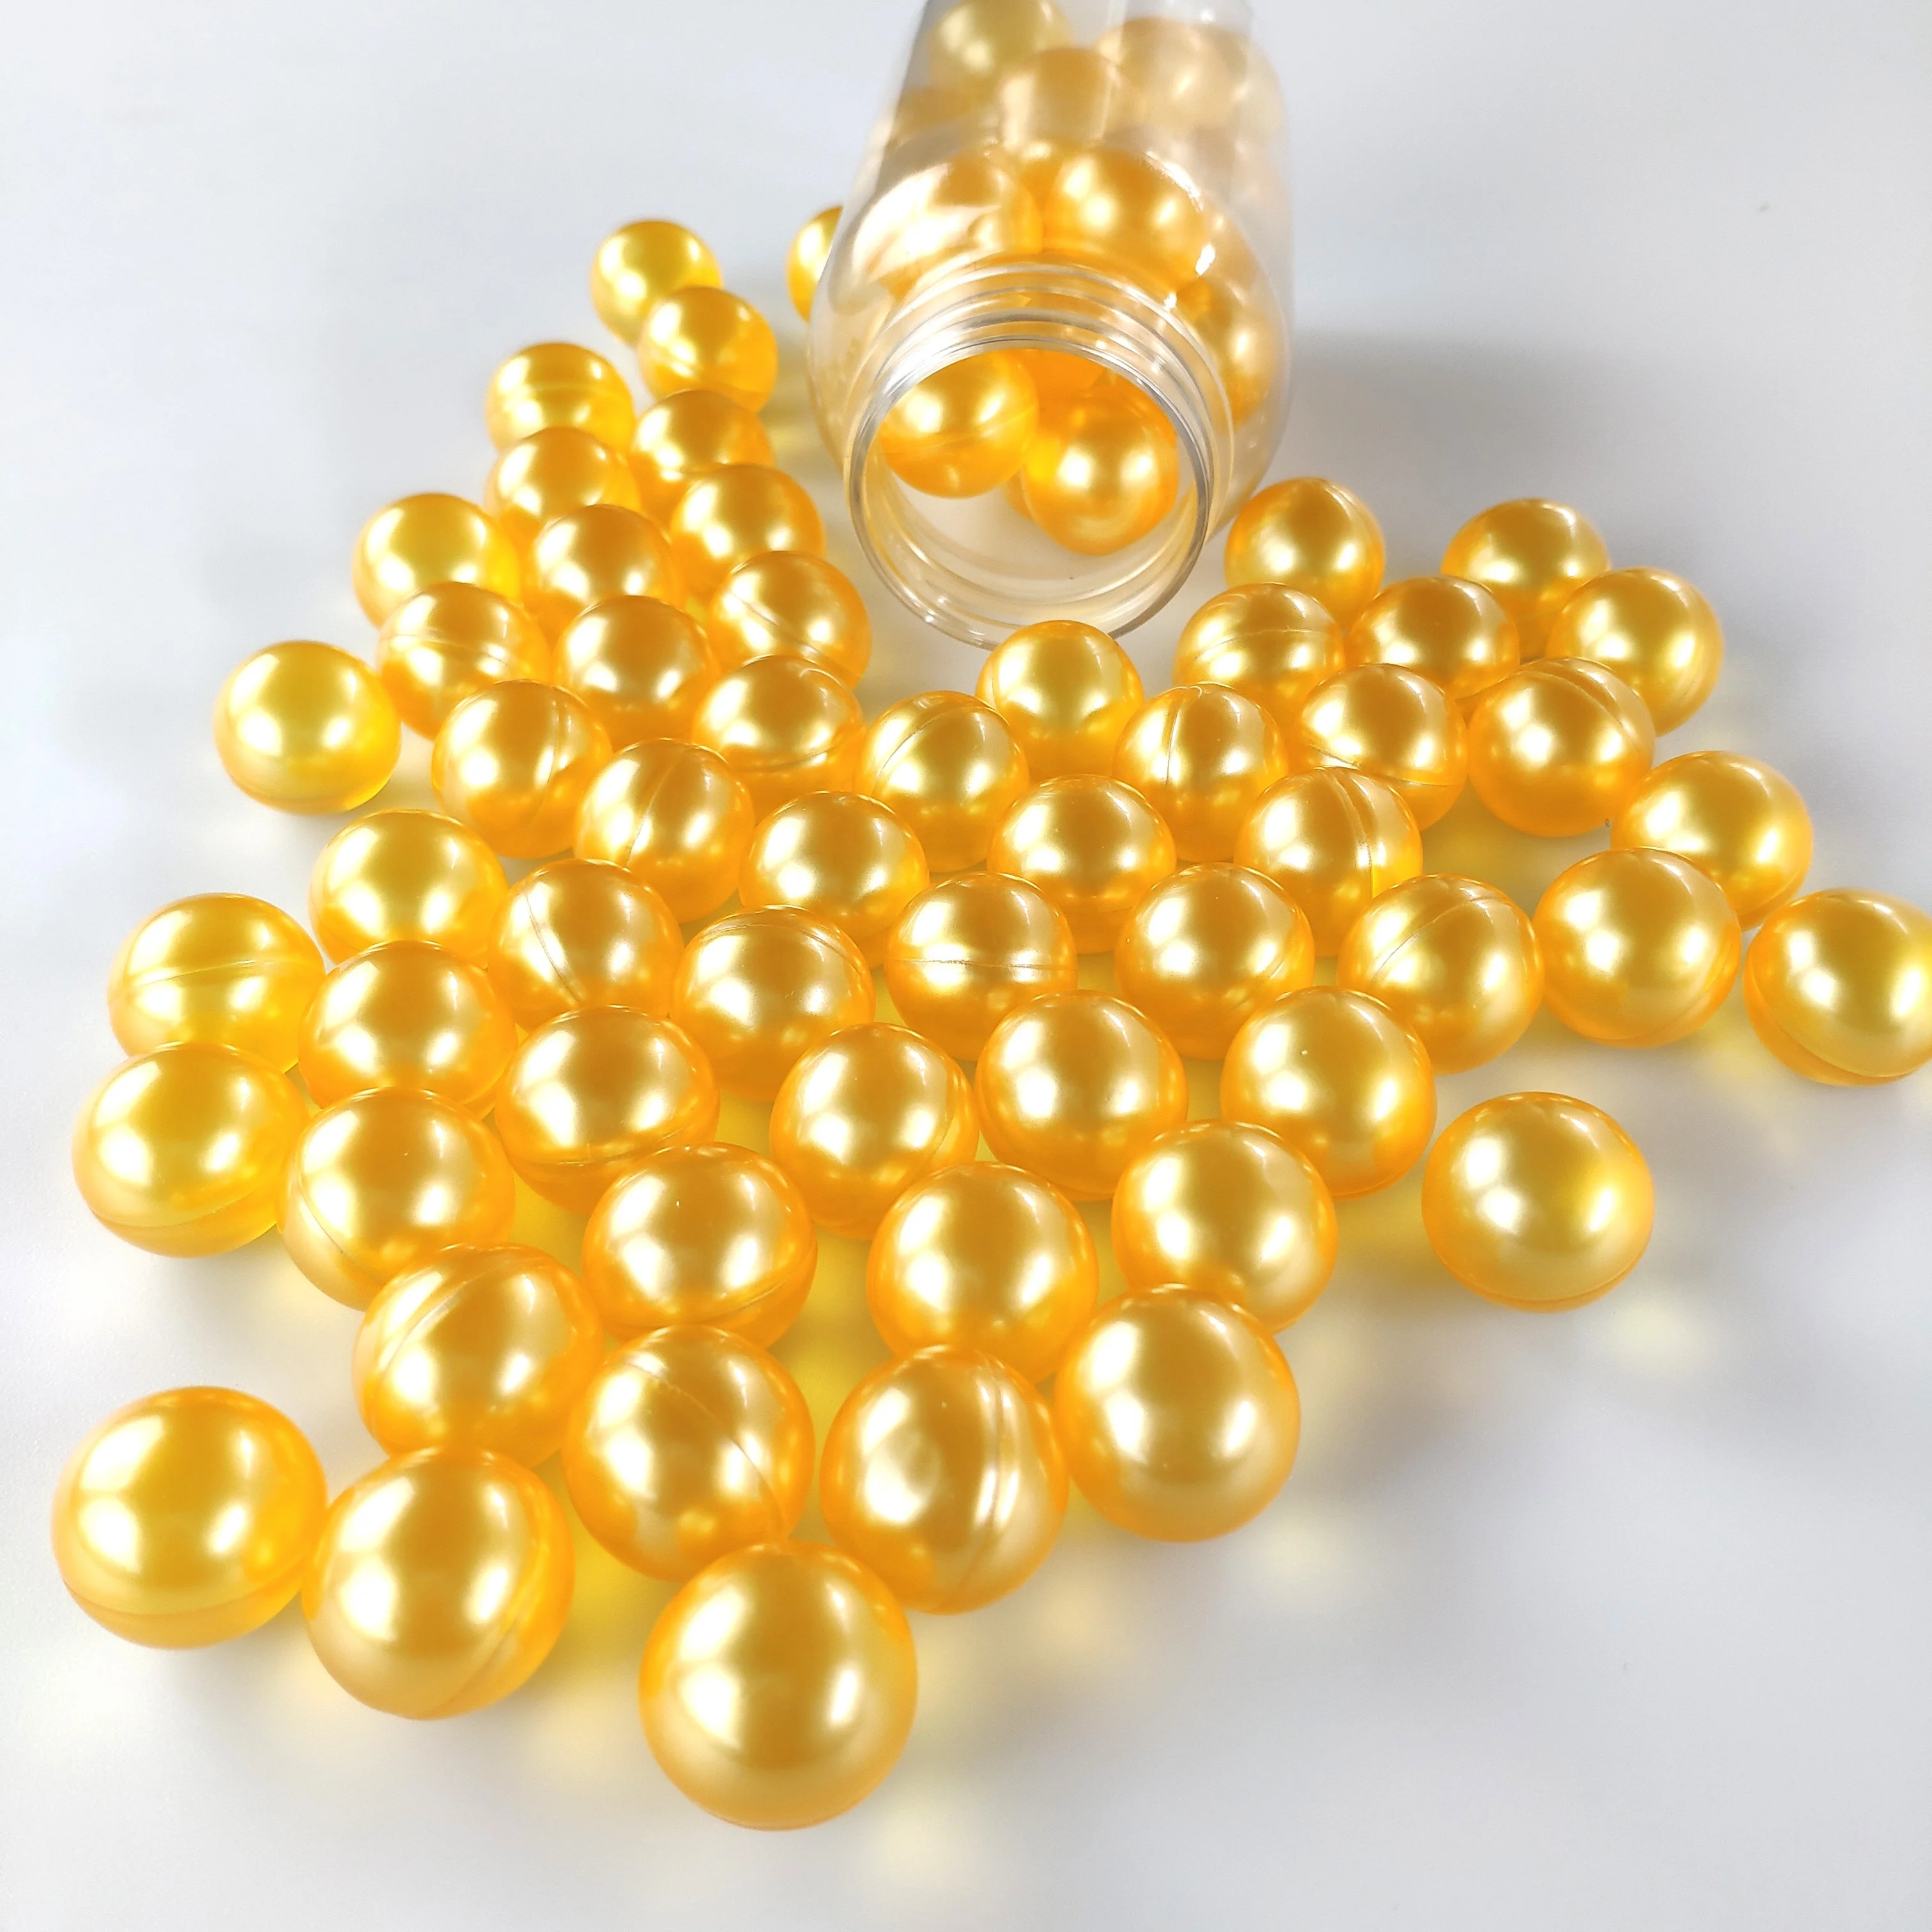 Хорошего качества ароматизированные пузырьки круглые увлажняющие шарики для ванны (62379364890)